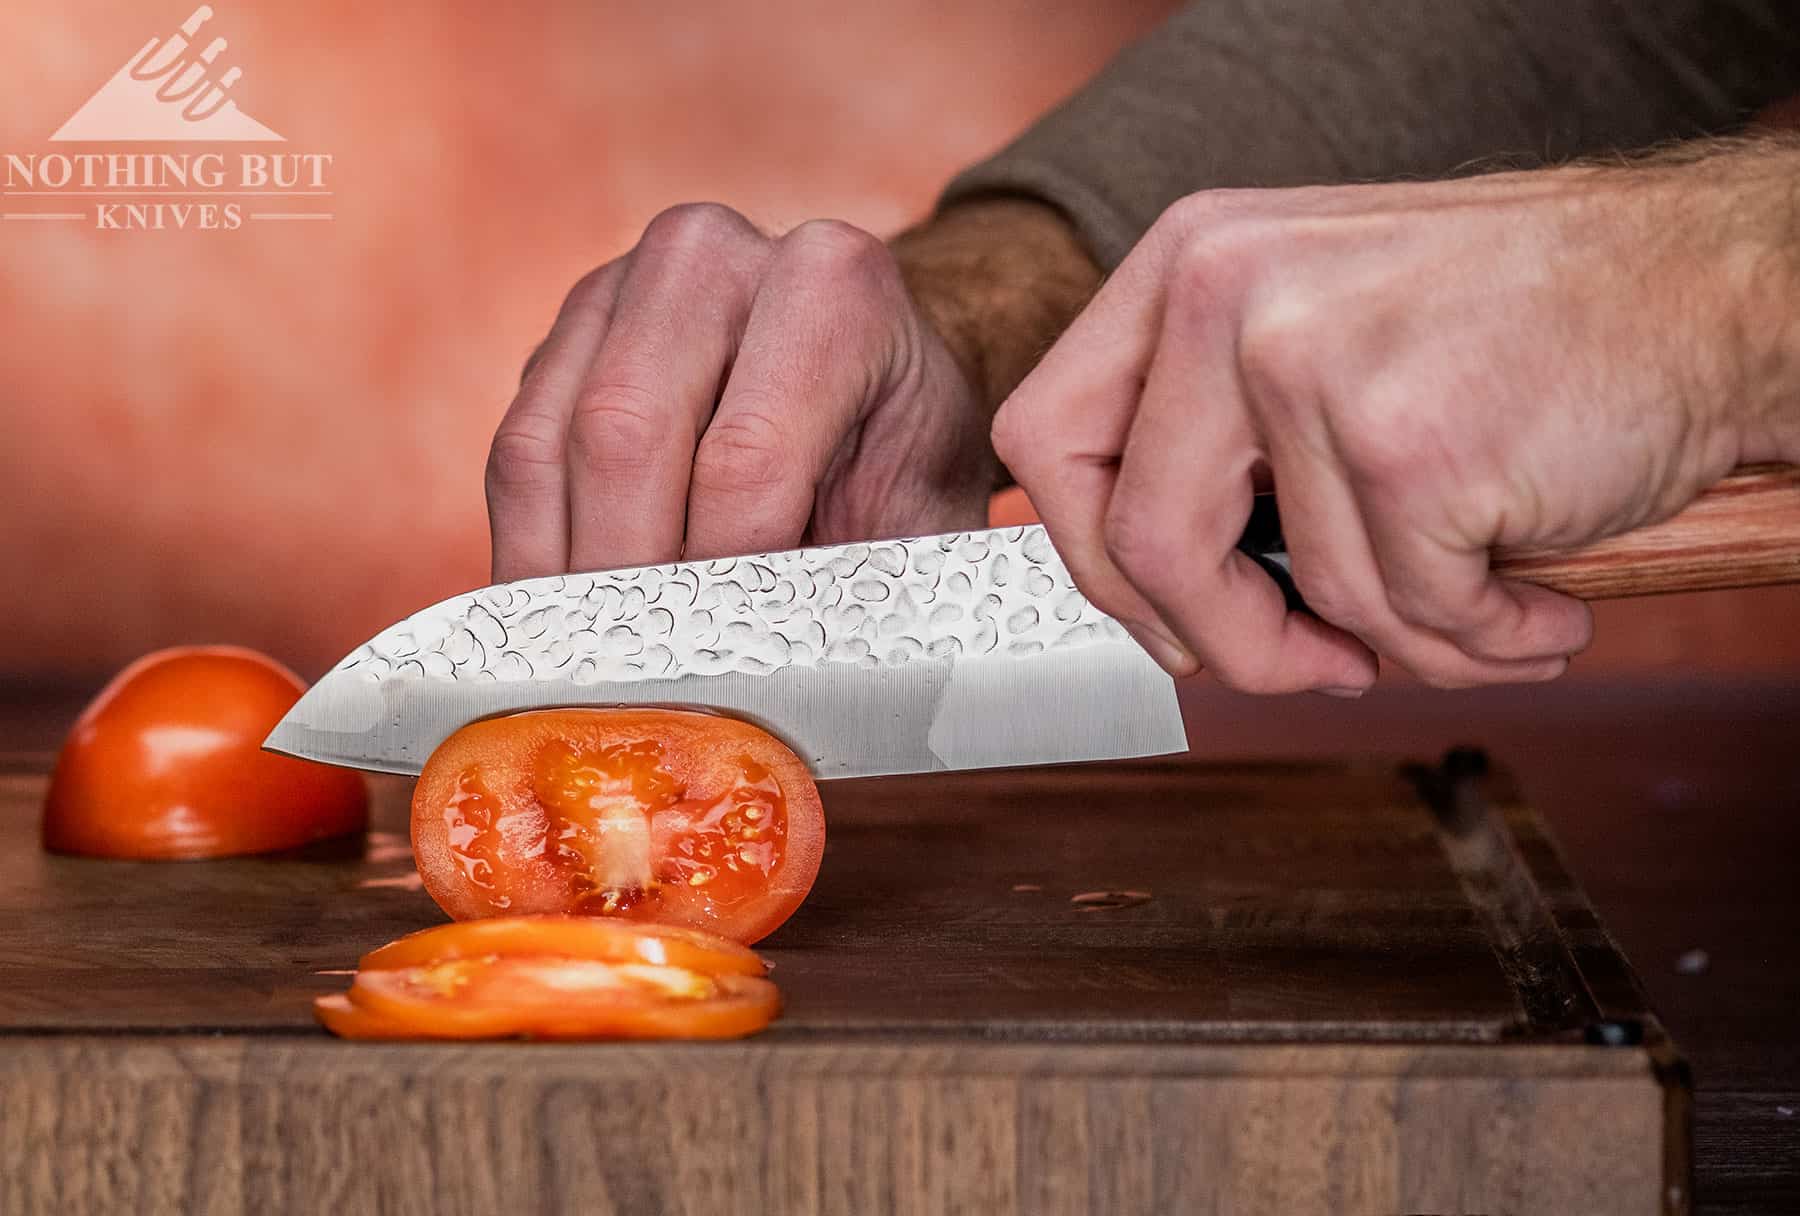 kitchen king 9 pcs chef knife